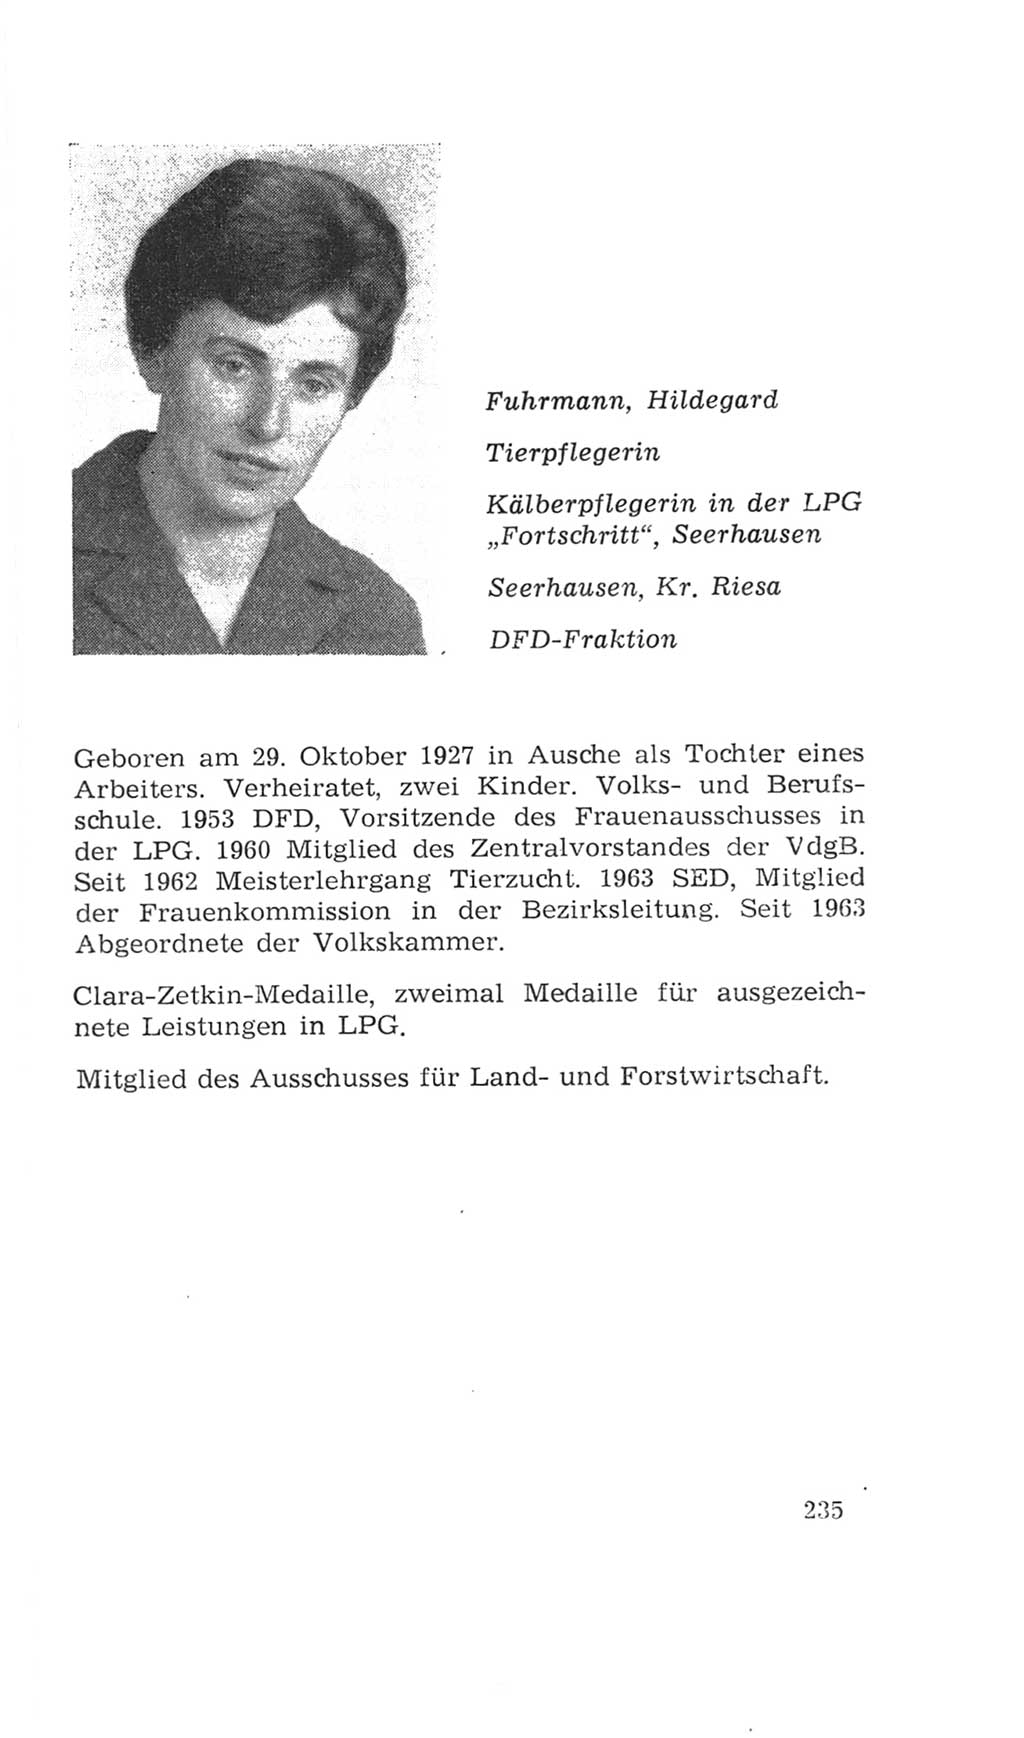 Volkskammer (VK) der Deutschen Demokratischen Republik (DDR), 4. Wahlperiode 1963-1967, Seite 235 (VK. DDR 4. WP. 1963-1967, S. 235)